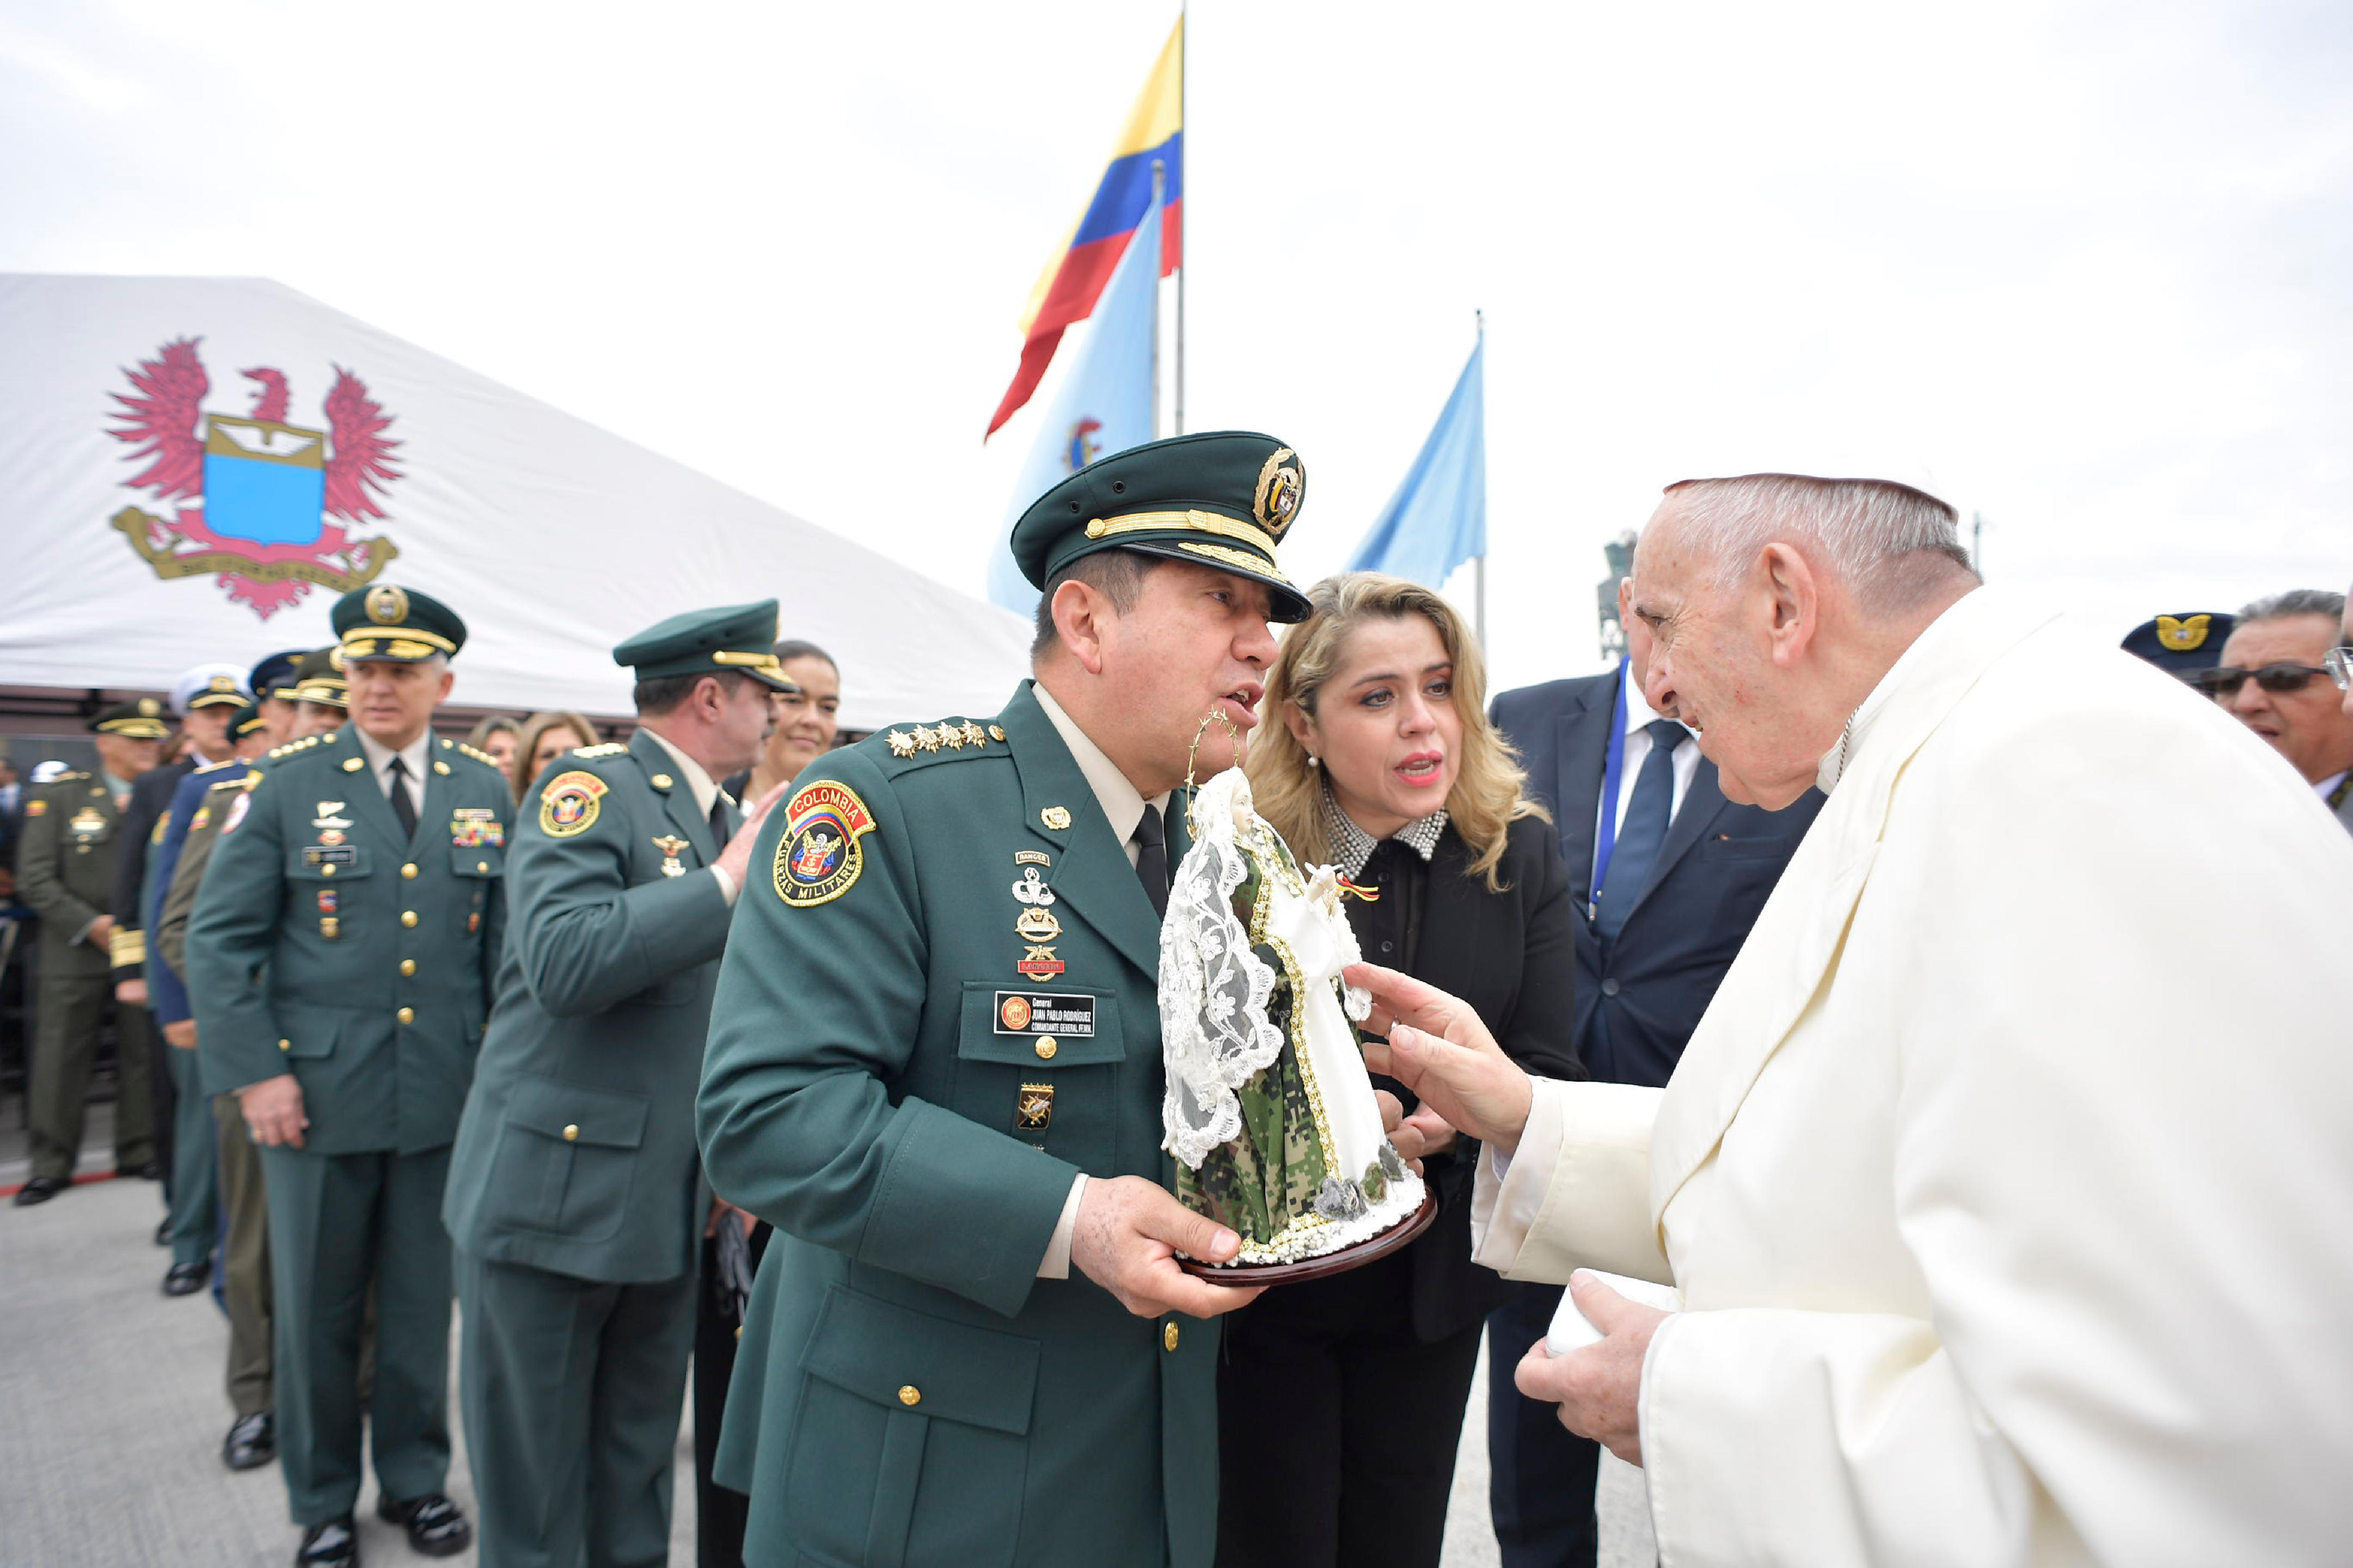 Le pape rencontre des militaires de Colombie, Aéroport de Bogota © L'Osservatore Romano